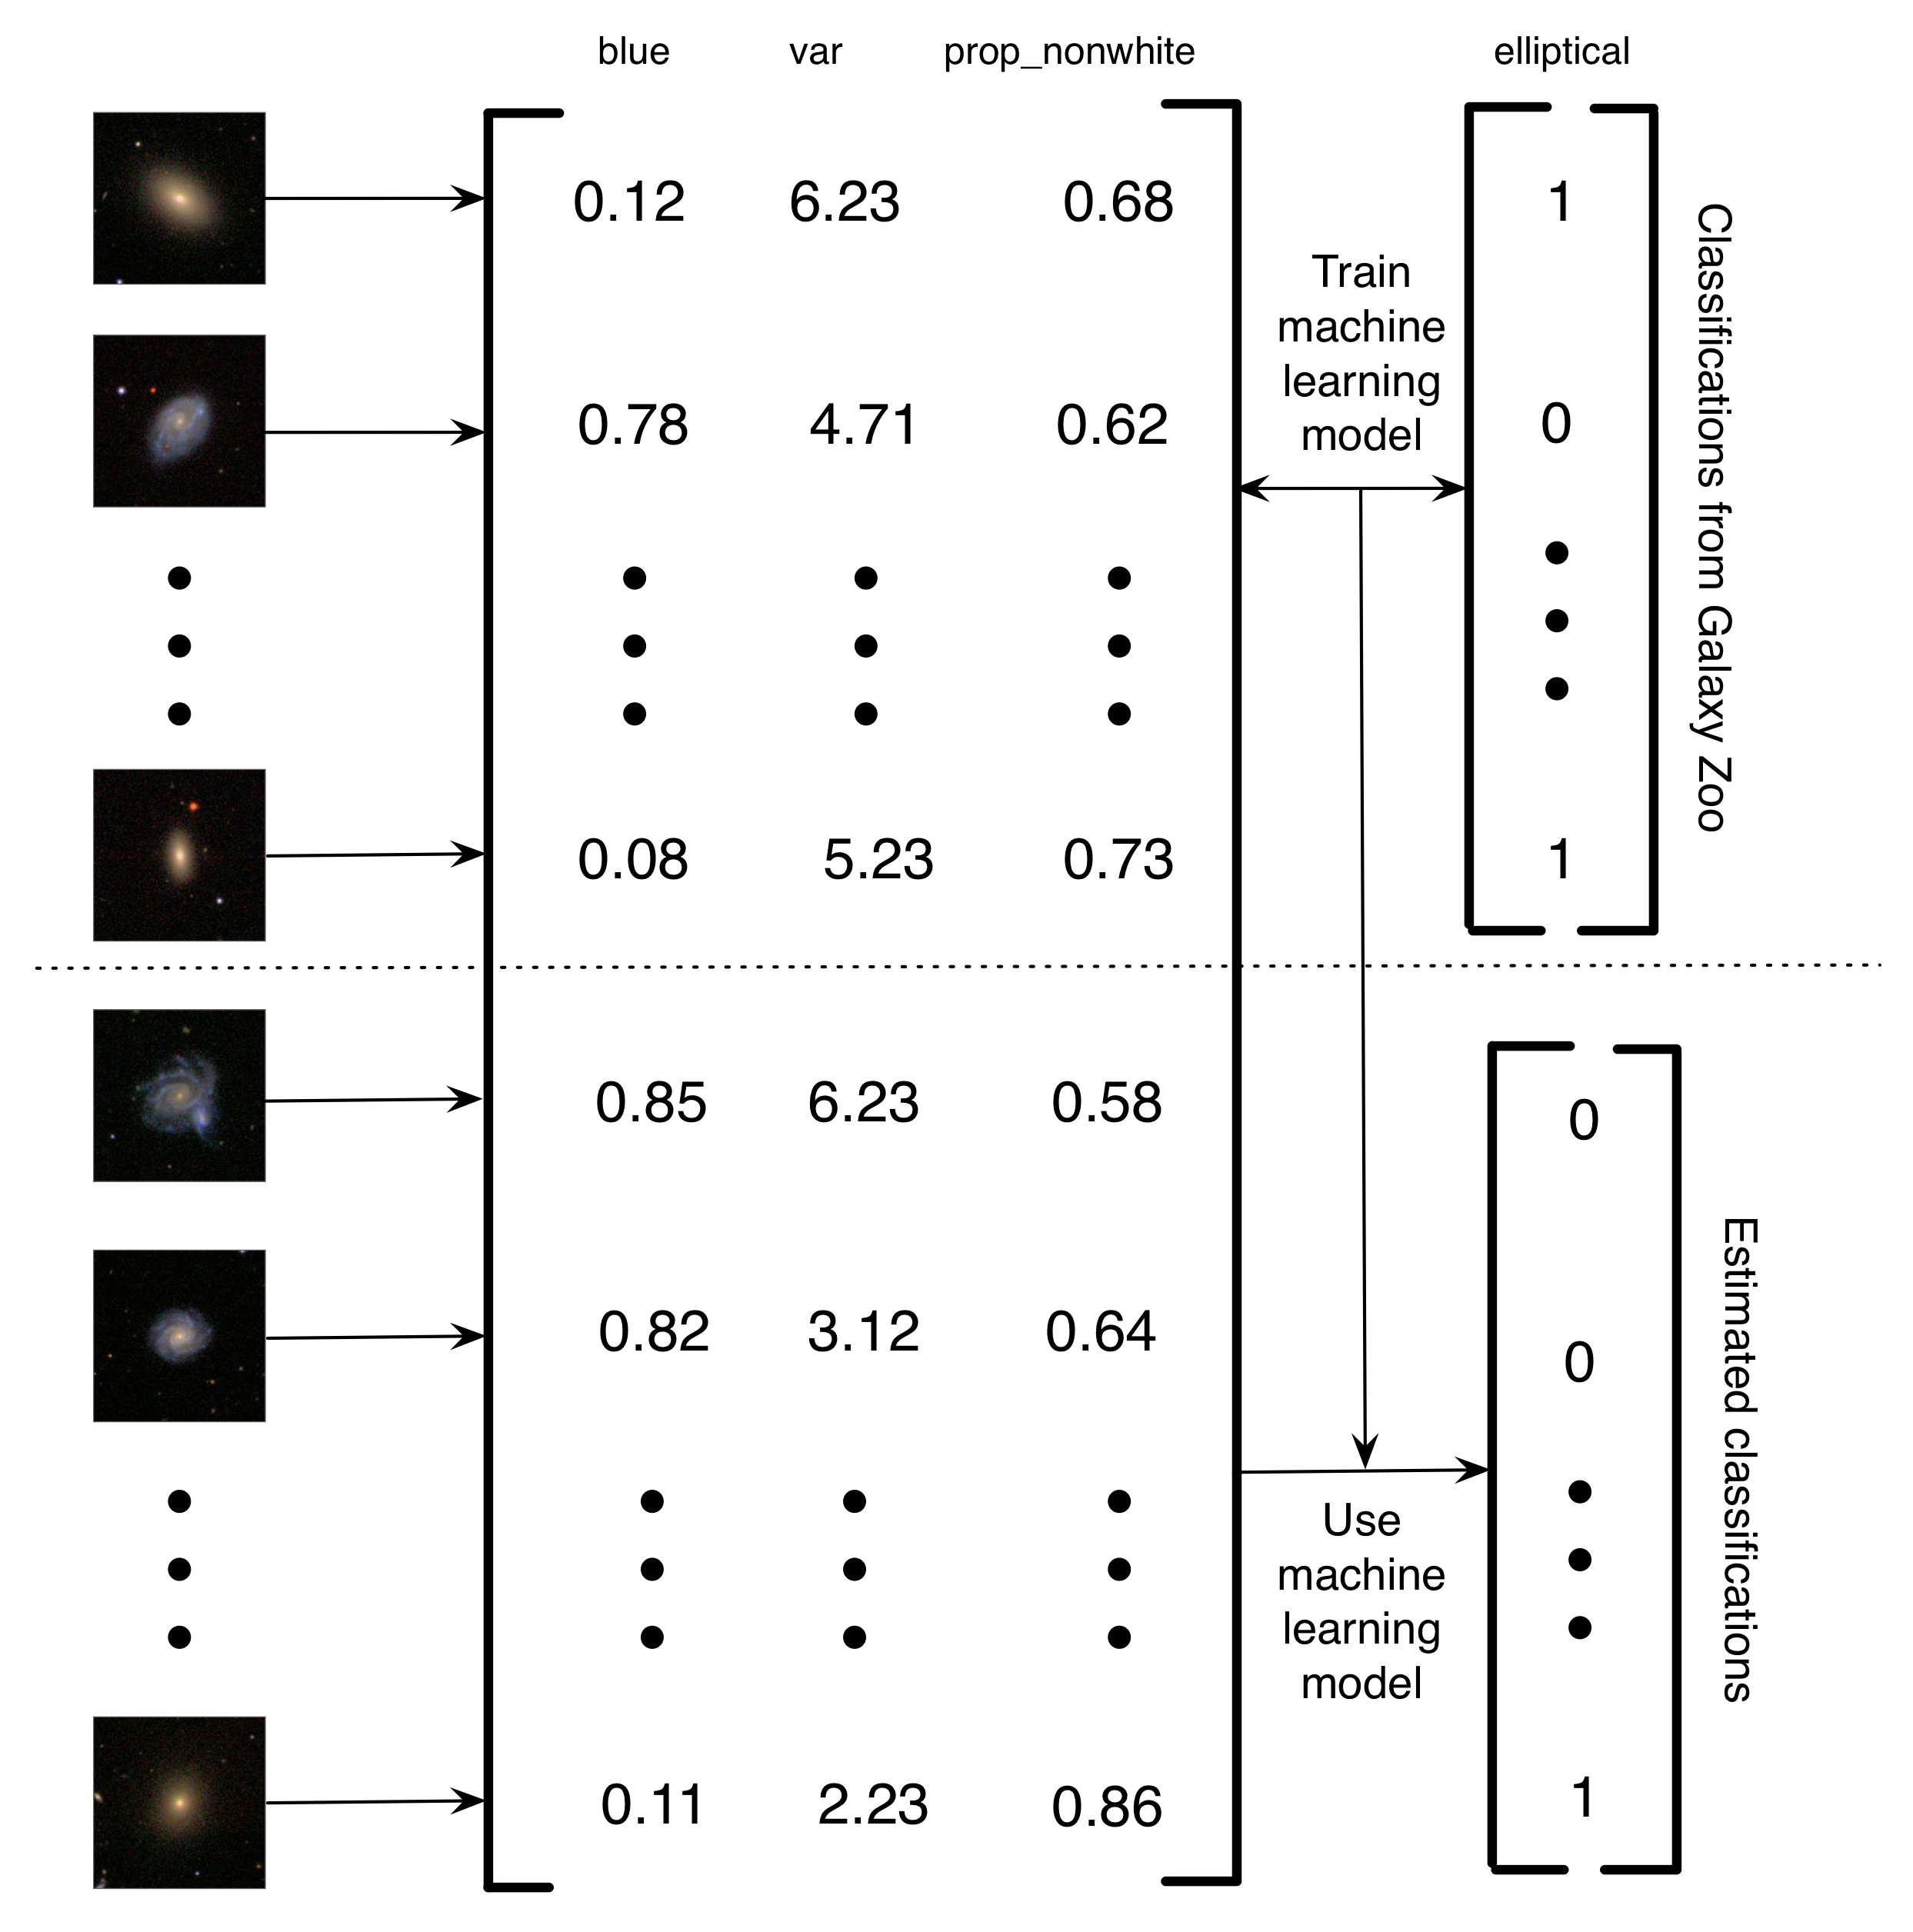 Figure 5.4: Description simplifiée de la manière dont Banerji et al. (2010) ont utilisé les classifications Galaxy Zoo pour former un modèle d'apprentissage automatique pour la classification des galaxies. Les images de galaxies ont été converties en une matrice de caractéristiques. Dans cet exemple simplifié, il y a trois caractéristiques (la quantité de bleu dans l'image, la variance de la luminosité des pixels et la proportion de pixels non blancs). Ensuite, pour un sous-ensemble des images, les étiquettes Galaxy Zoo sont utilisées pour former un modèle d'apprentissage automatique. Enfin, l'apprentissage automatique est utilisé pour estimer les classifications des galaxies restantes. C'est ce que j'appelle un projet de calcul humain assisté par ordinateur parce que, plutôt que d'avoir à résoudre un problème, les humains construisent un ensemble de données qui peut être utilisé pour former un ordinateur pour résoudre le problème. L'avantage de ce système de calcul humain assisté par ordinateur est qu'il vous permet de manipuler des quantités essentiellement infinies de données en utilisant seulement une quantité finie d'effort humain. Images de galaxies reproduites avec la permission de Sloan Digital Sky Survey.